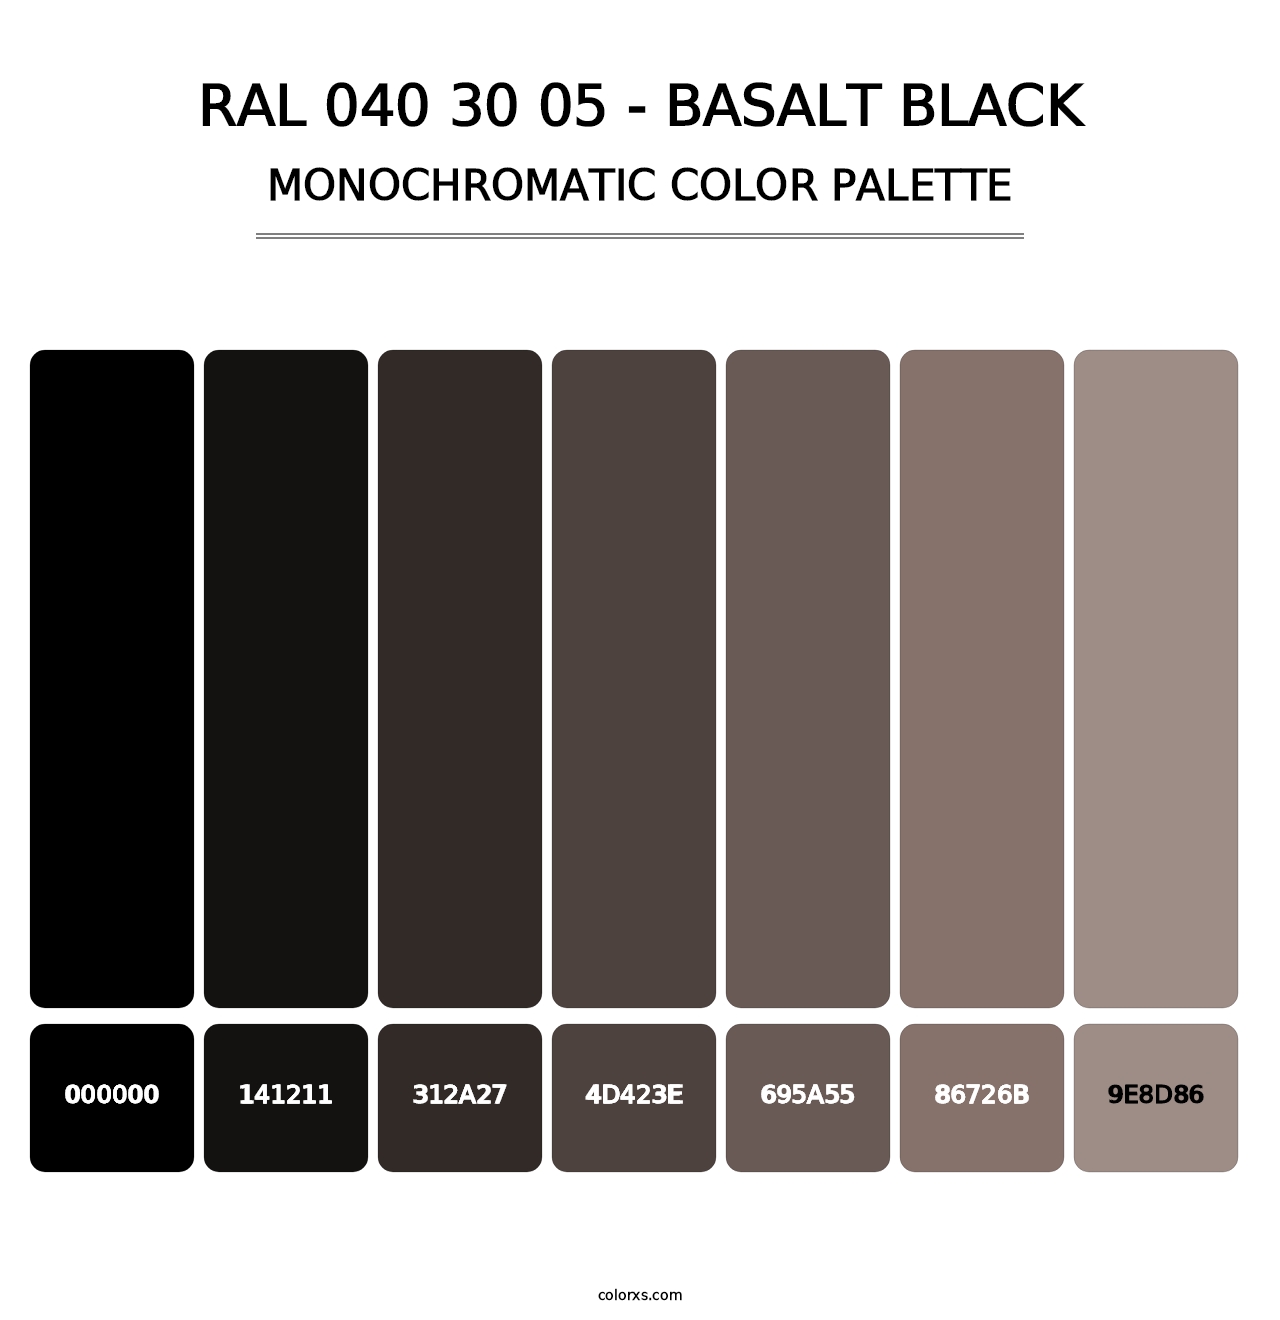 RAL 040 30 05 - Basalt Black - Monochromatic Color Palette